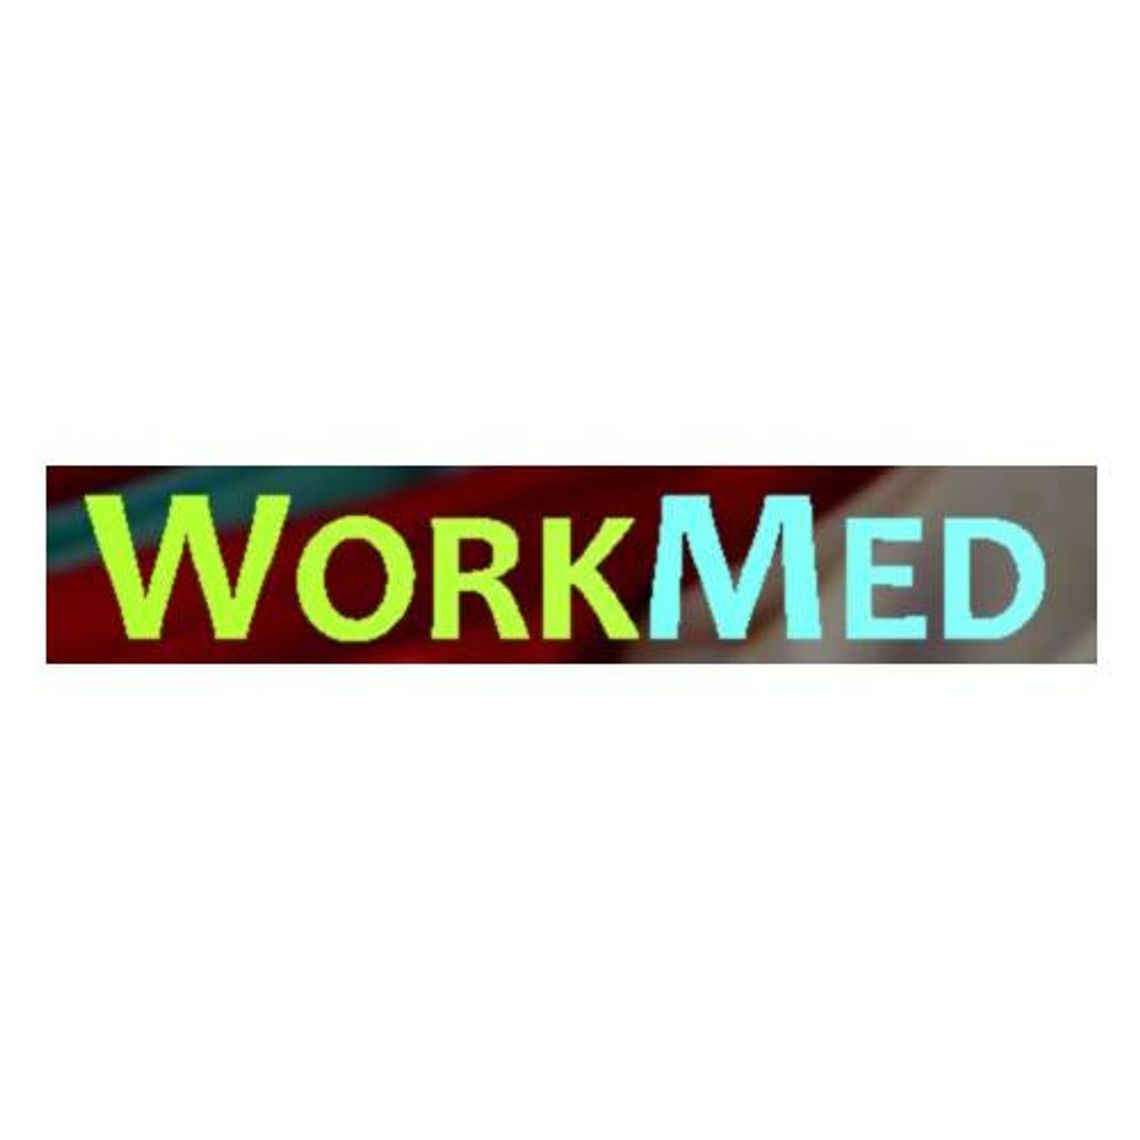 WorkMed - Producent odzieży medycznej i ochronnej